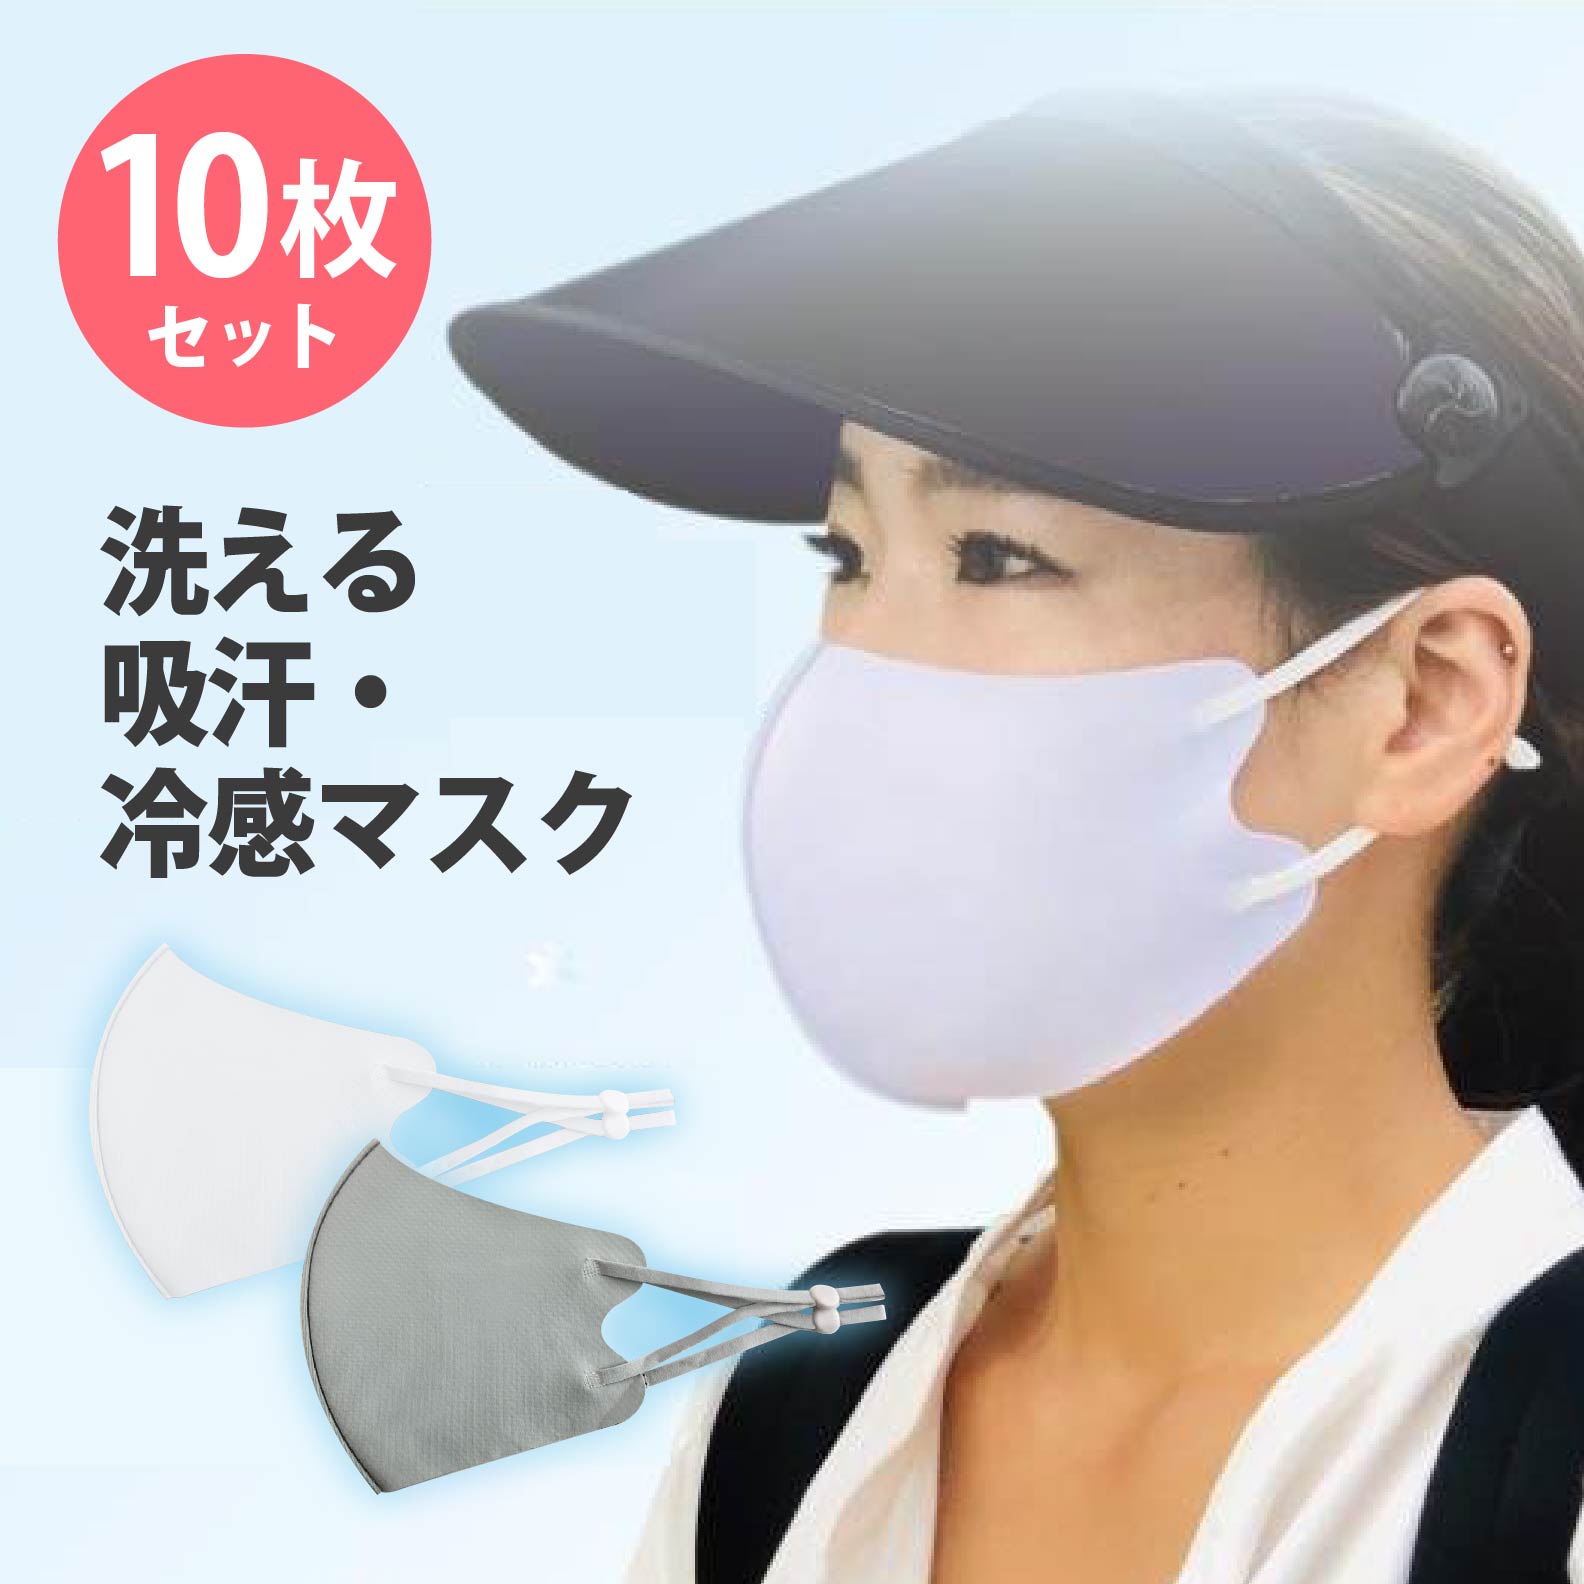 冷感マスク 同色10枚セット 吸汗速乾 洗える COOLMASK 冷感 速乾 立体 通気性 吸水速乾 接触冷感 ホワイト グレー 